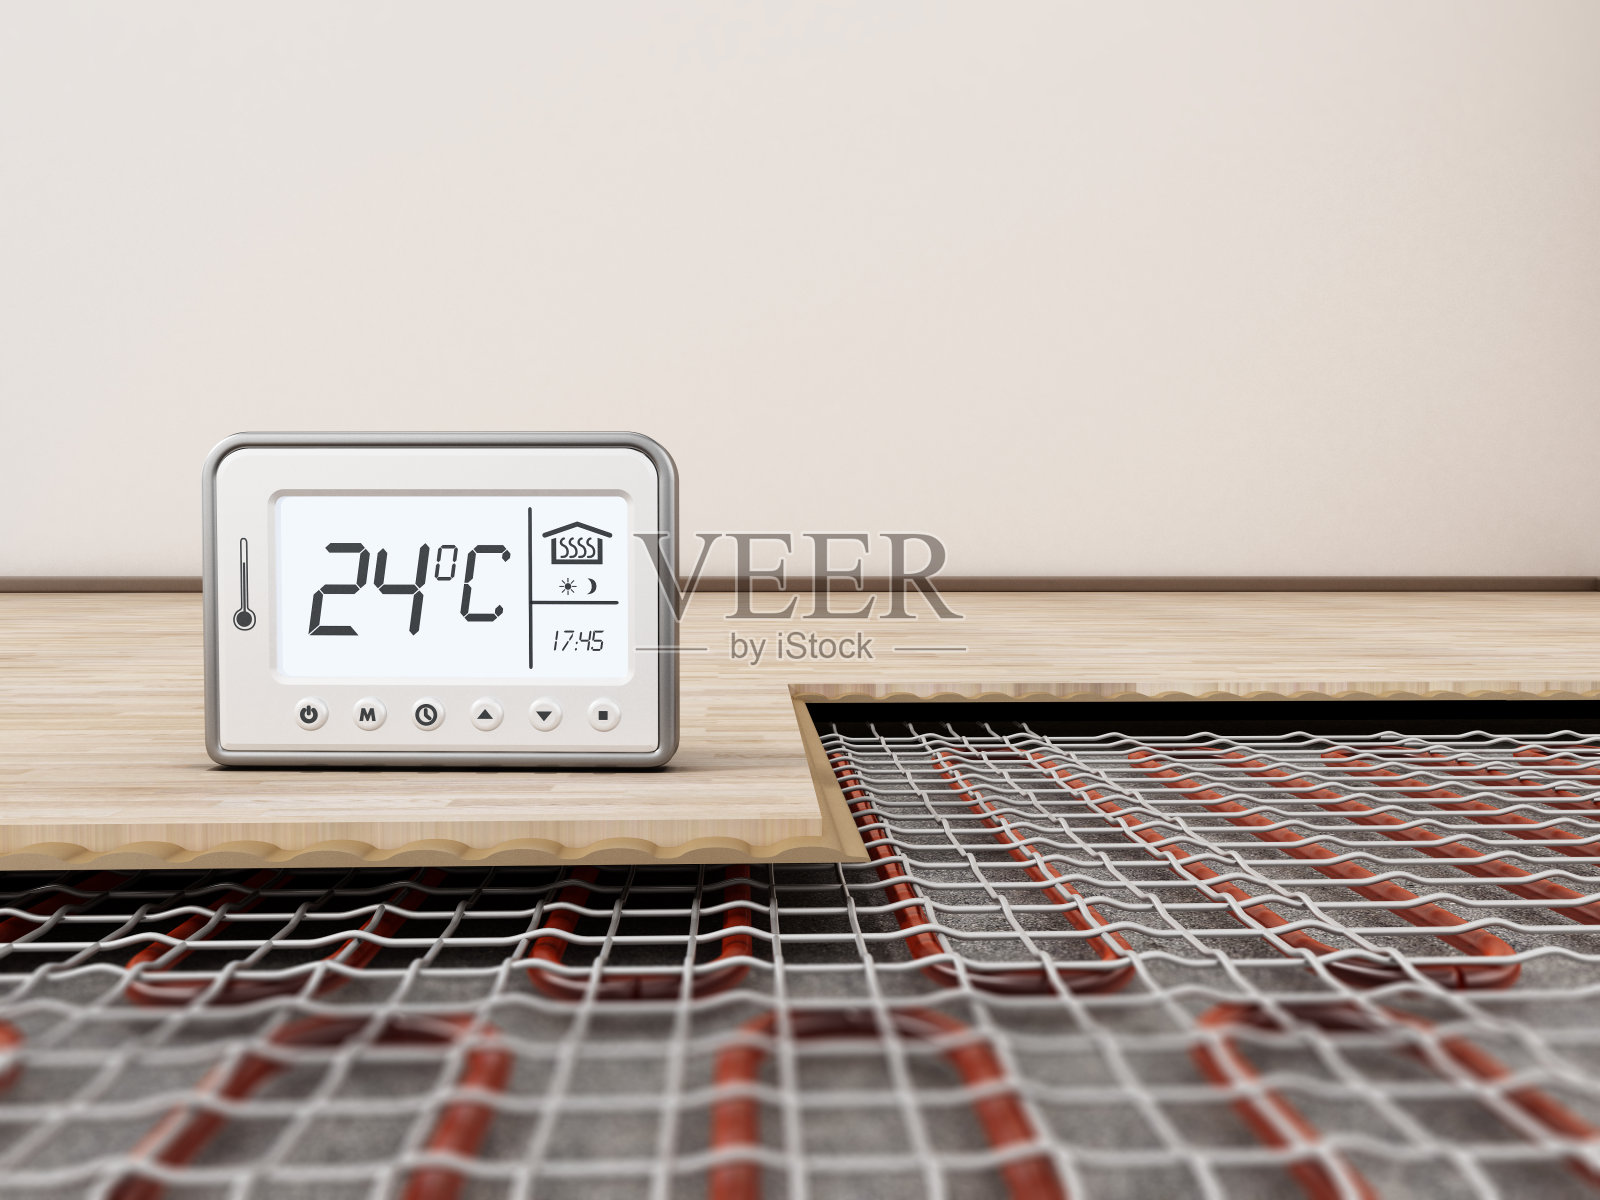 地板采暖系统安装热表显示理想的室温照片摄影图片